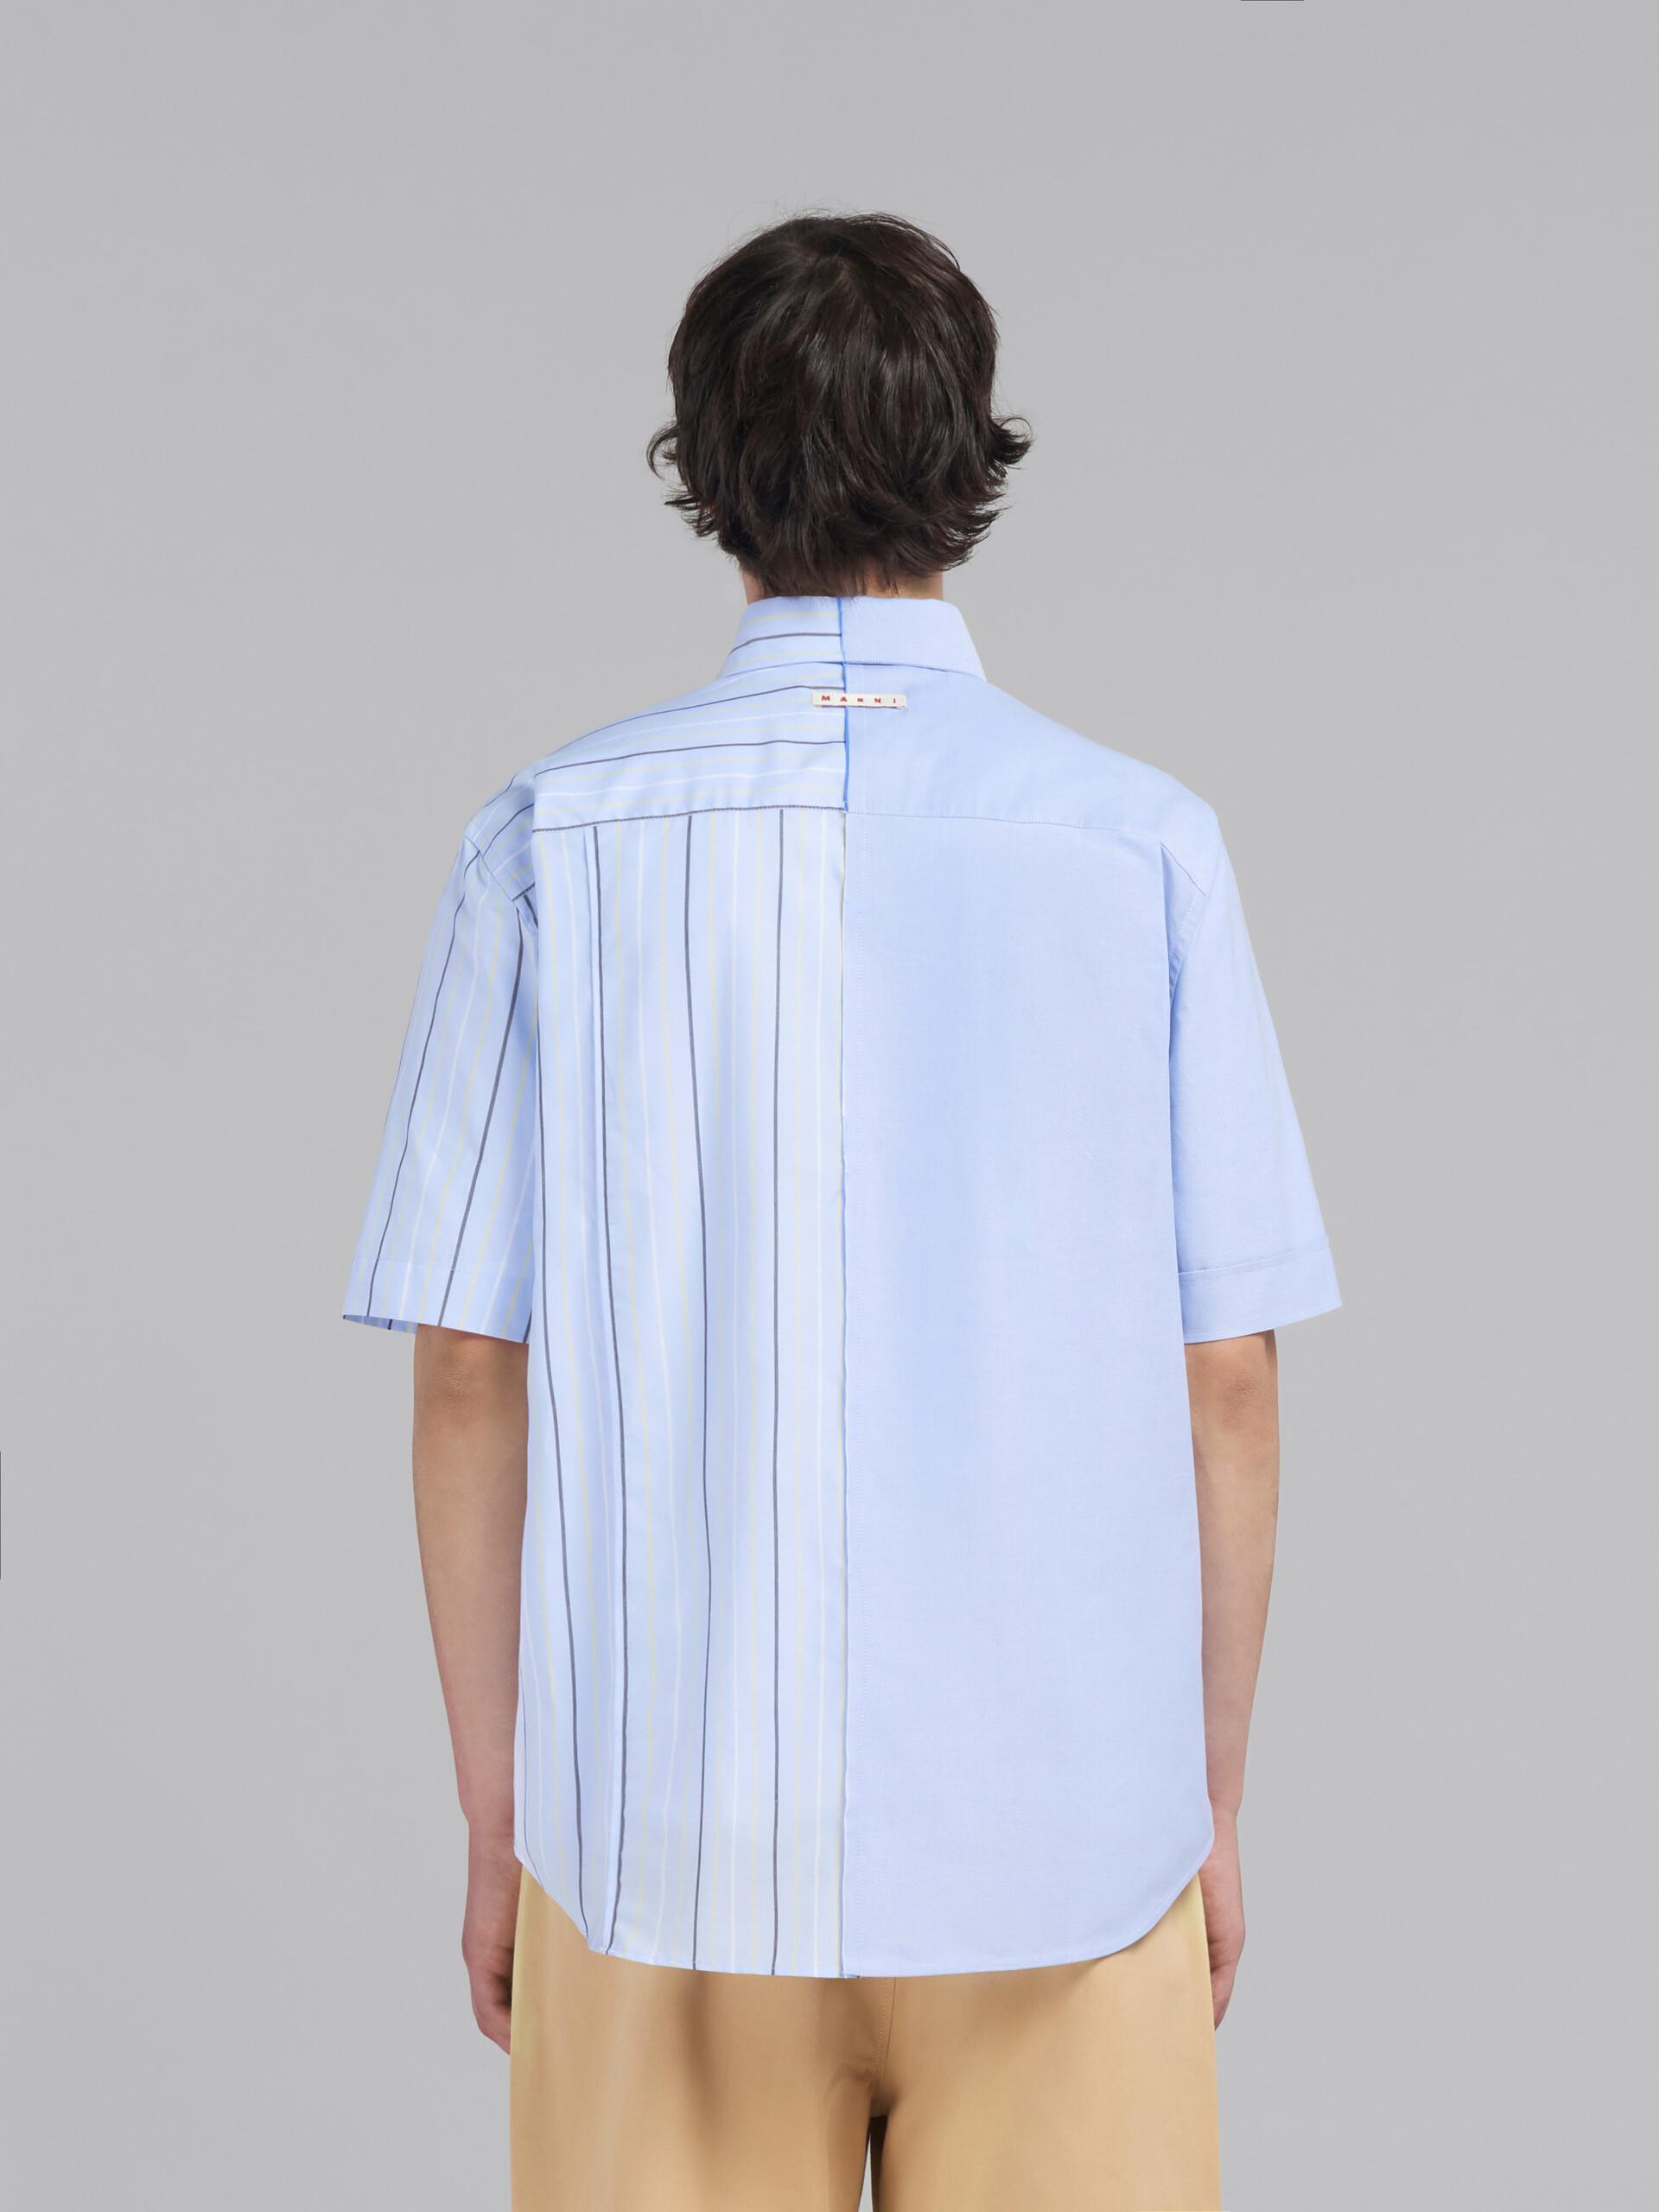 Camisa de popelina ecológica azul claro con diseño dividido por la mitad - Camisas - Image 3